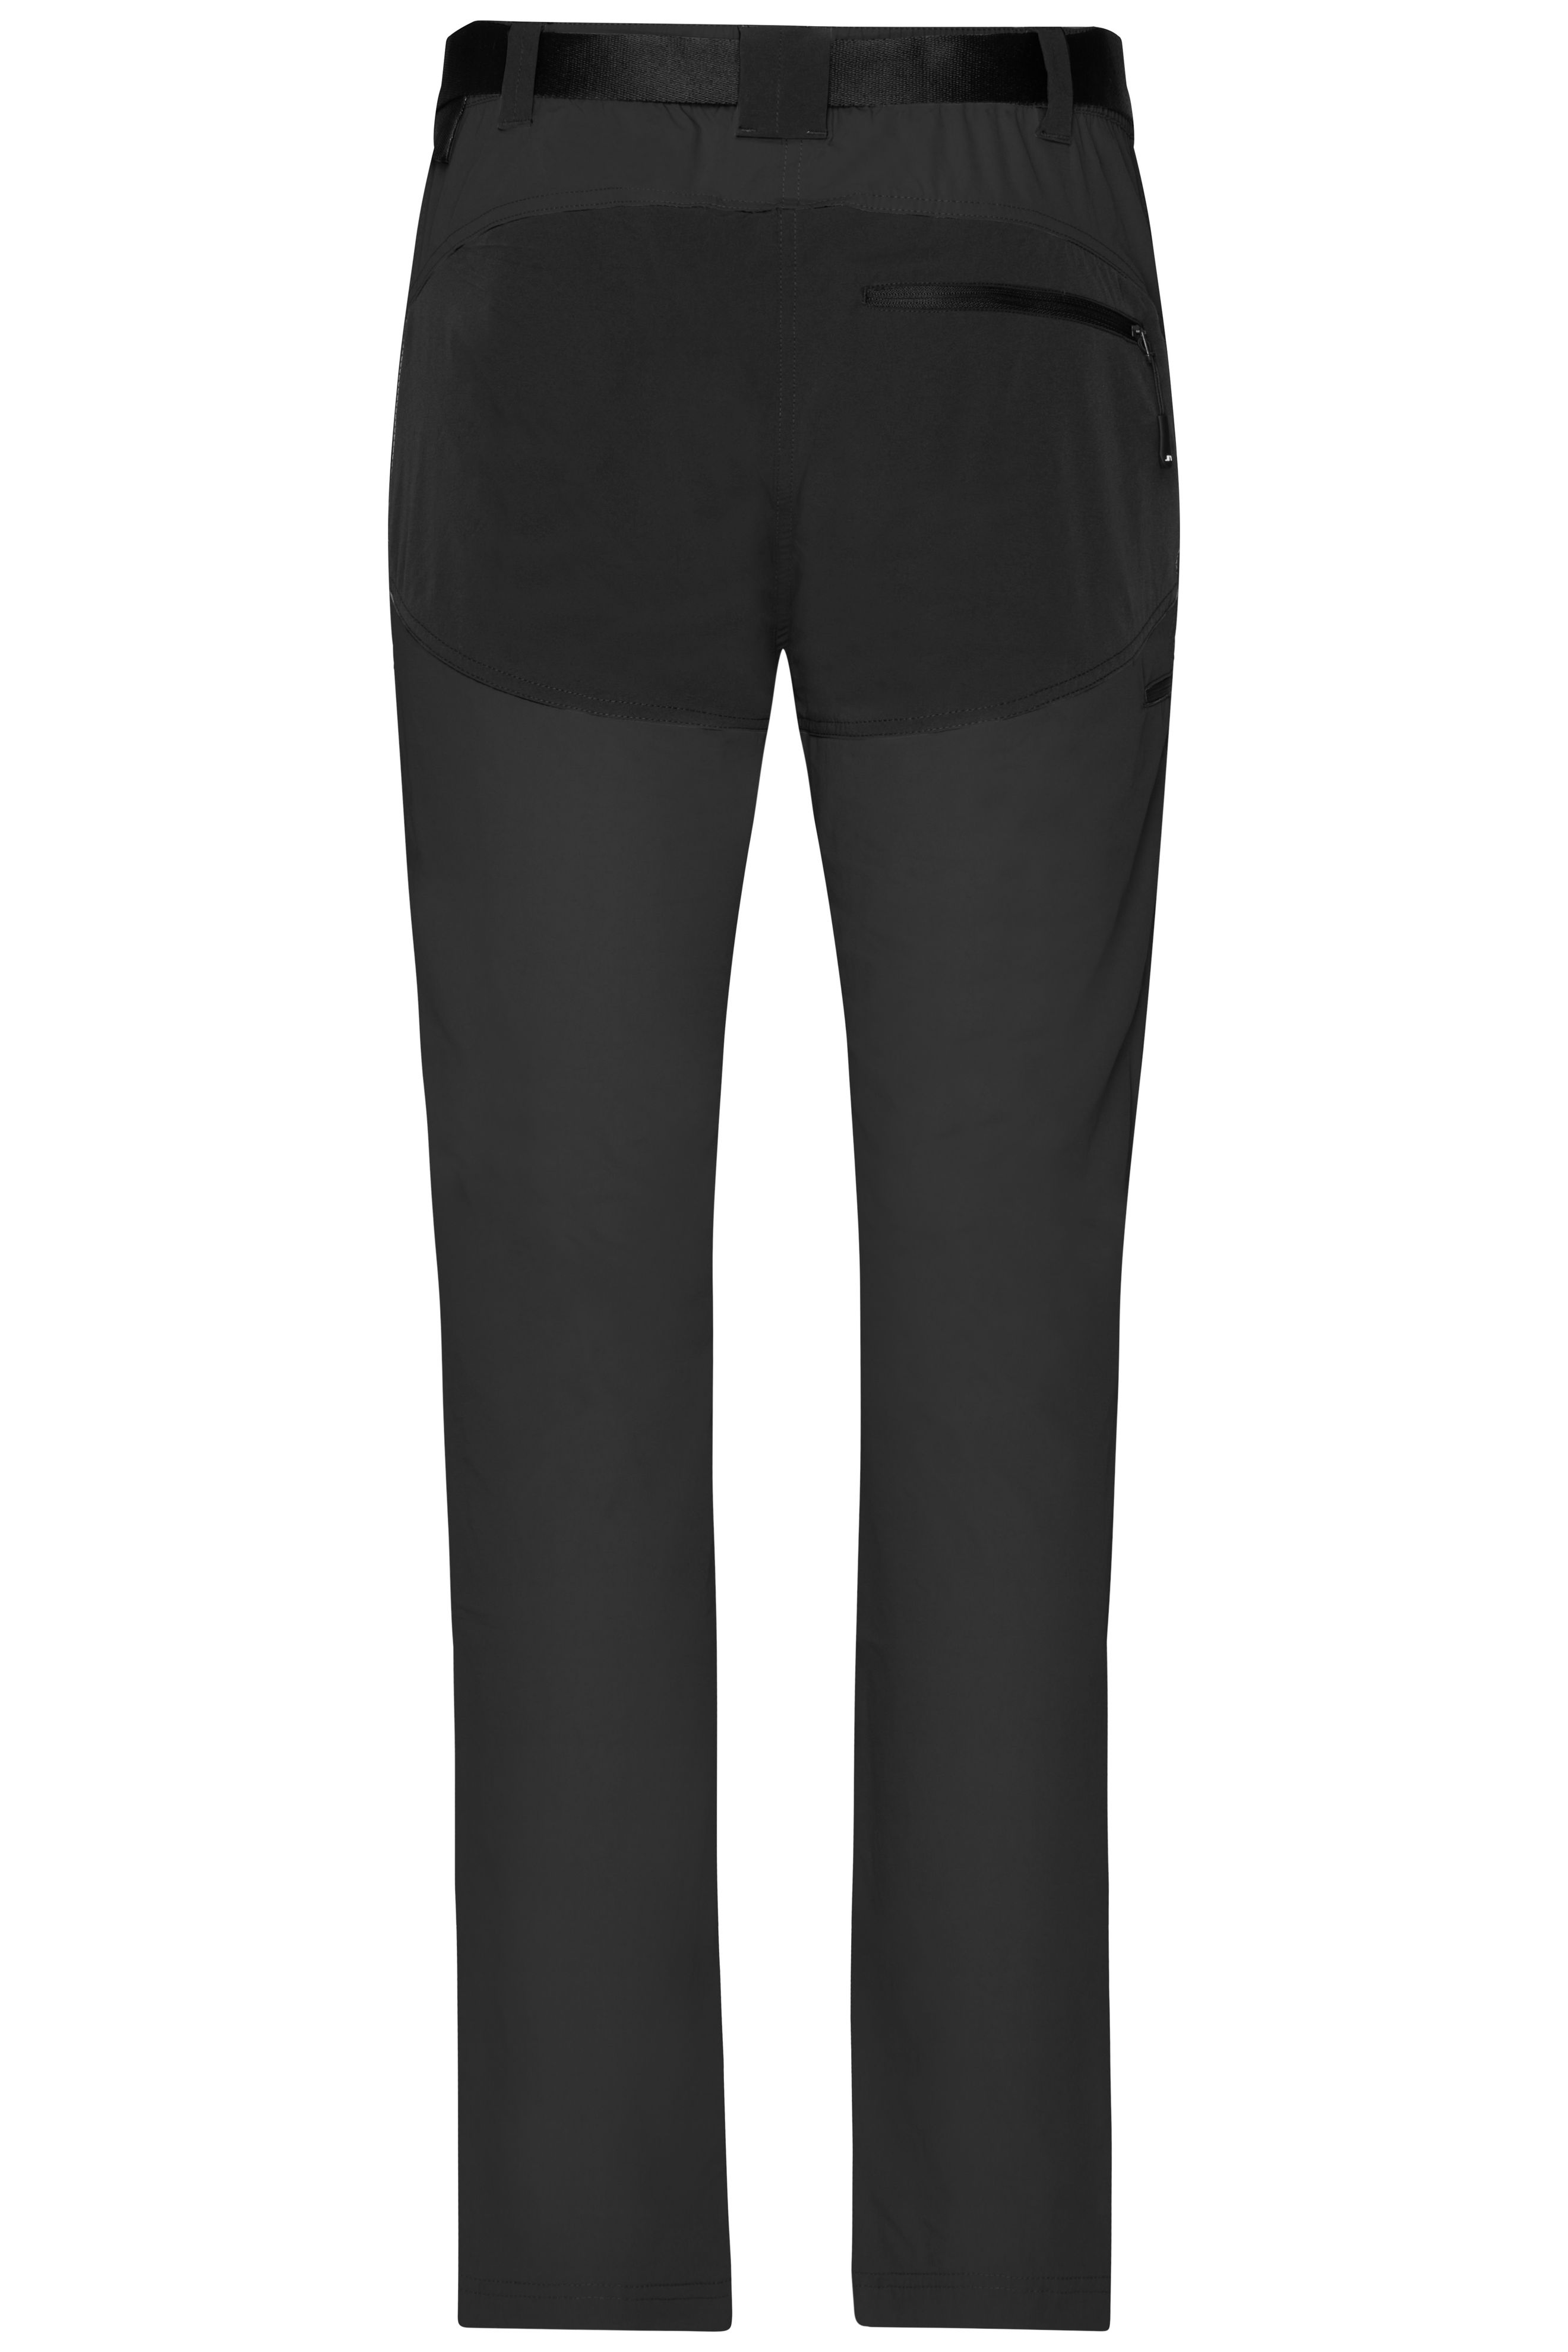 Ladies' Trekking Pants JN1205 Bi-elastische Outdoorhose in sportlicher Optik